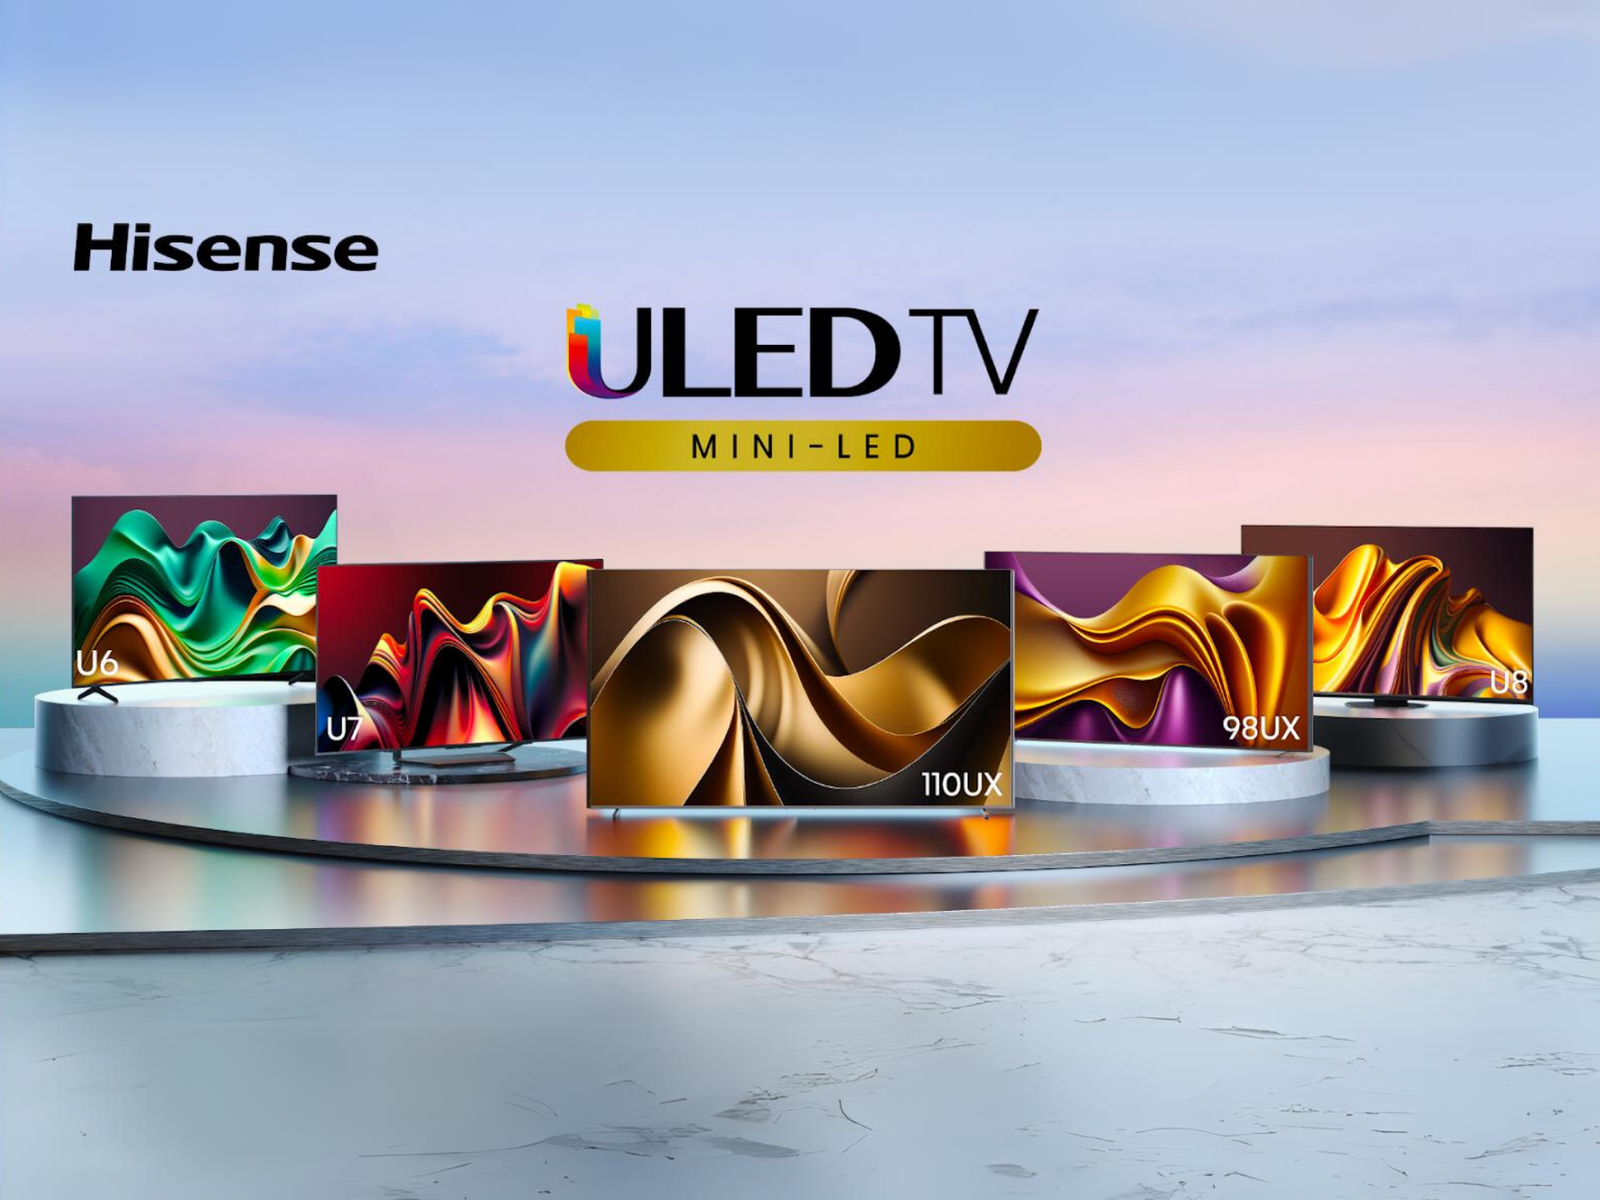 Hisense’s new ULED X lineup tops out at 10,000 nits brightness